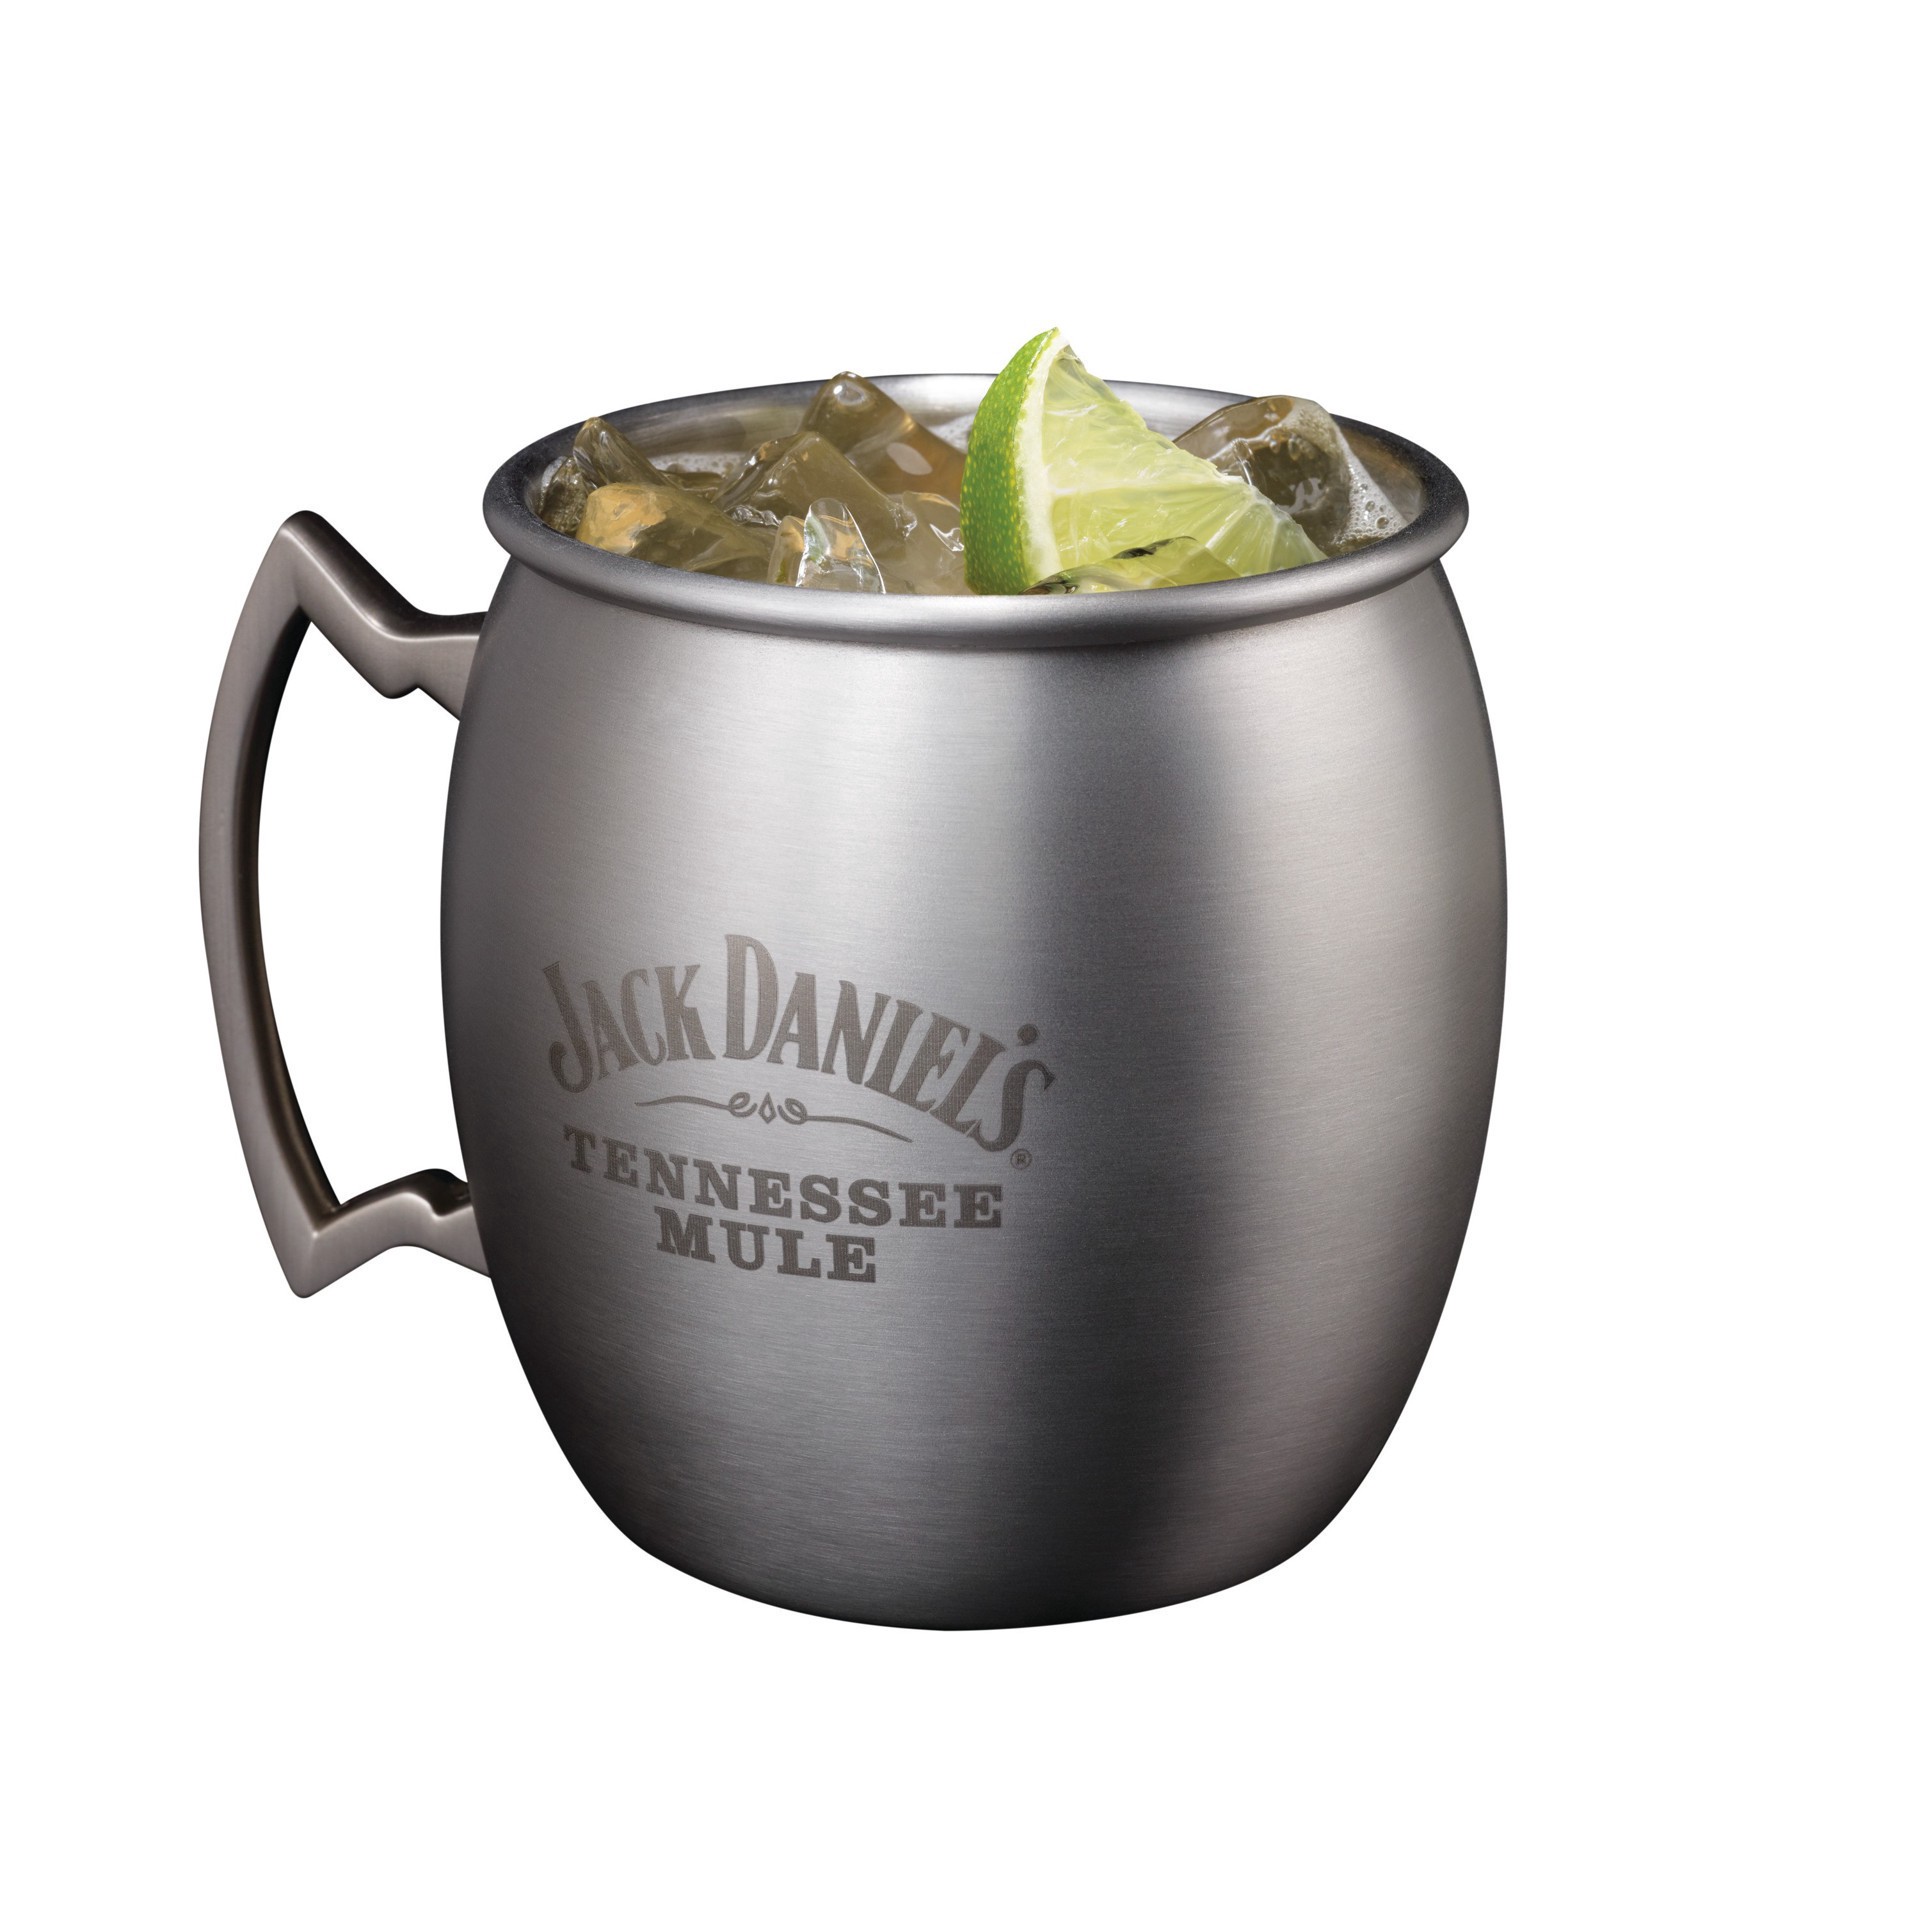 slide 8 of 25, Jack Daniel's Tennessee Whiskey, 1.75 liter